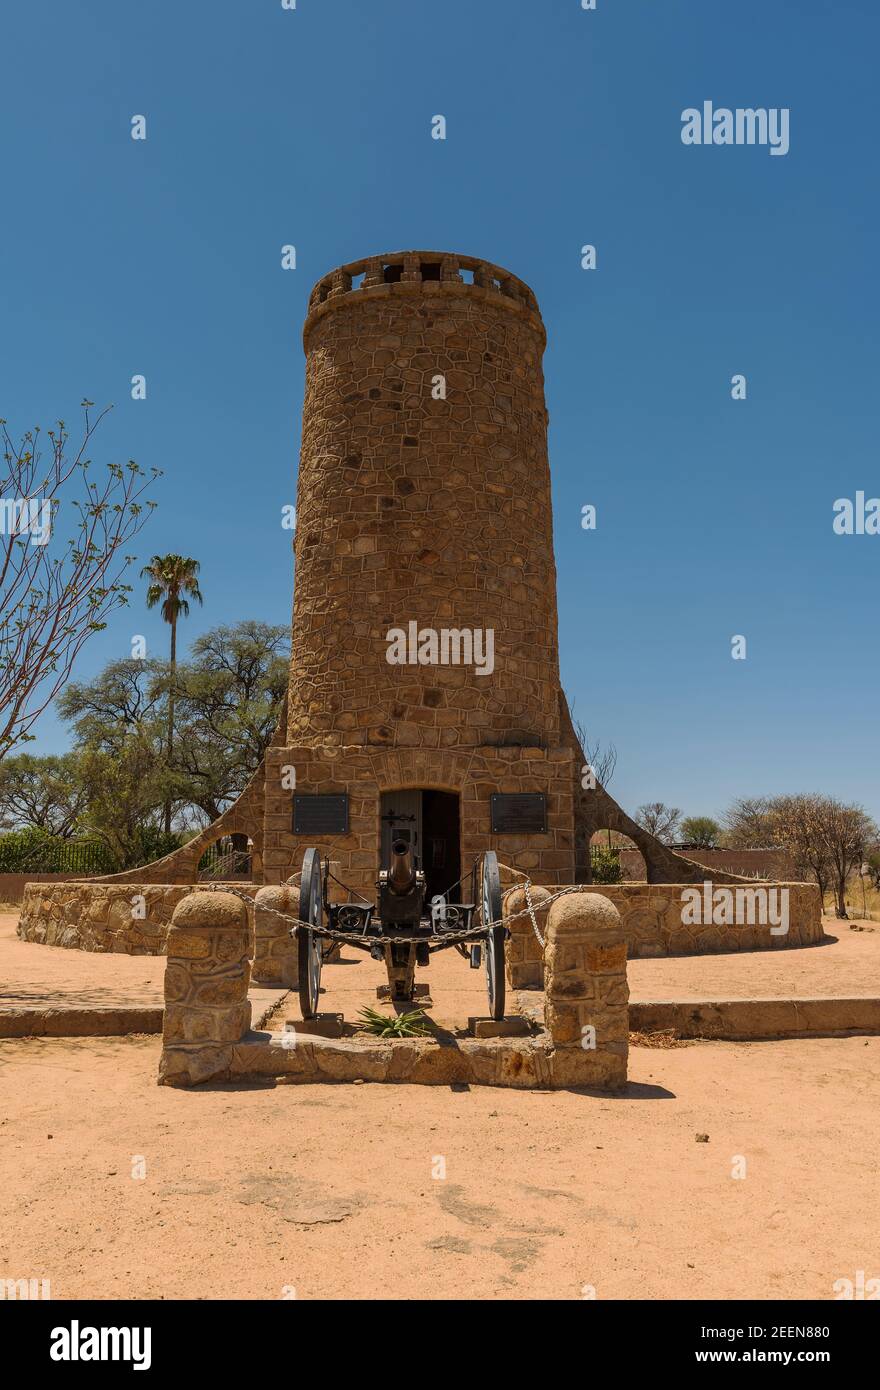 Franke Tower, Franketurm, military monument in Omaruru, Namibia Stock Photo